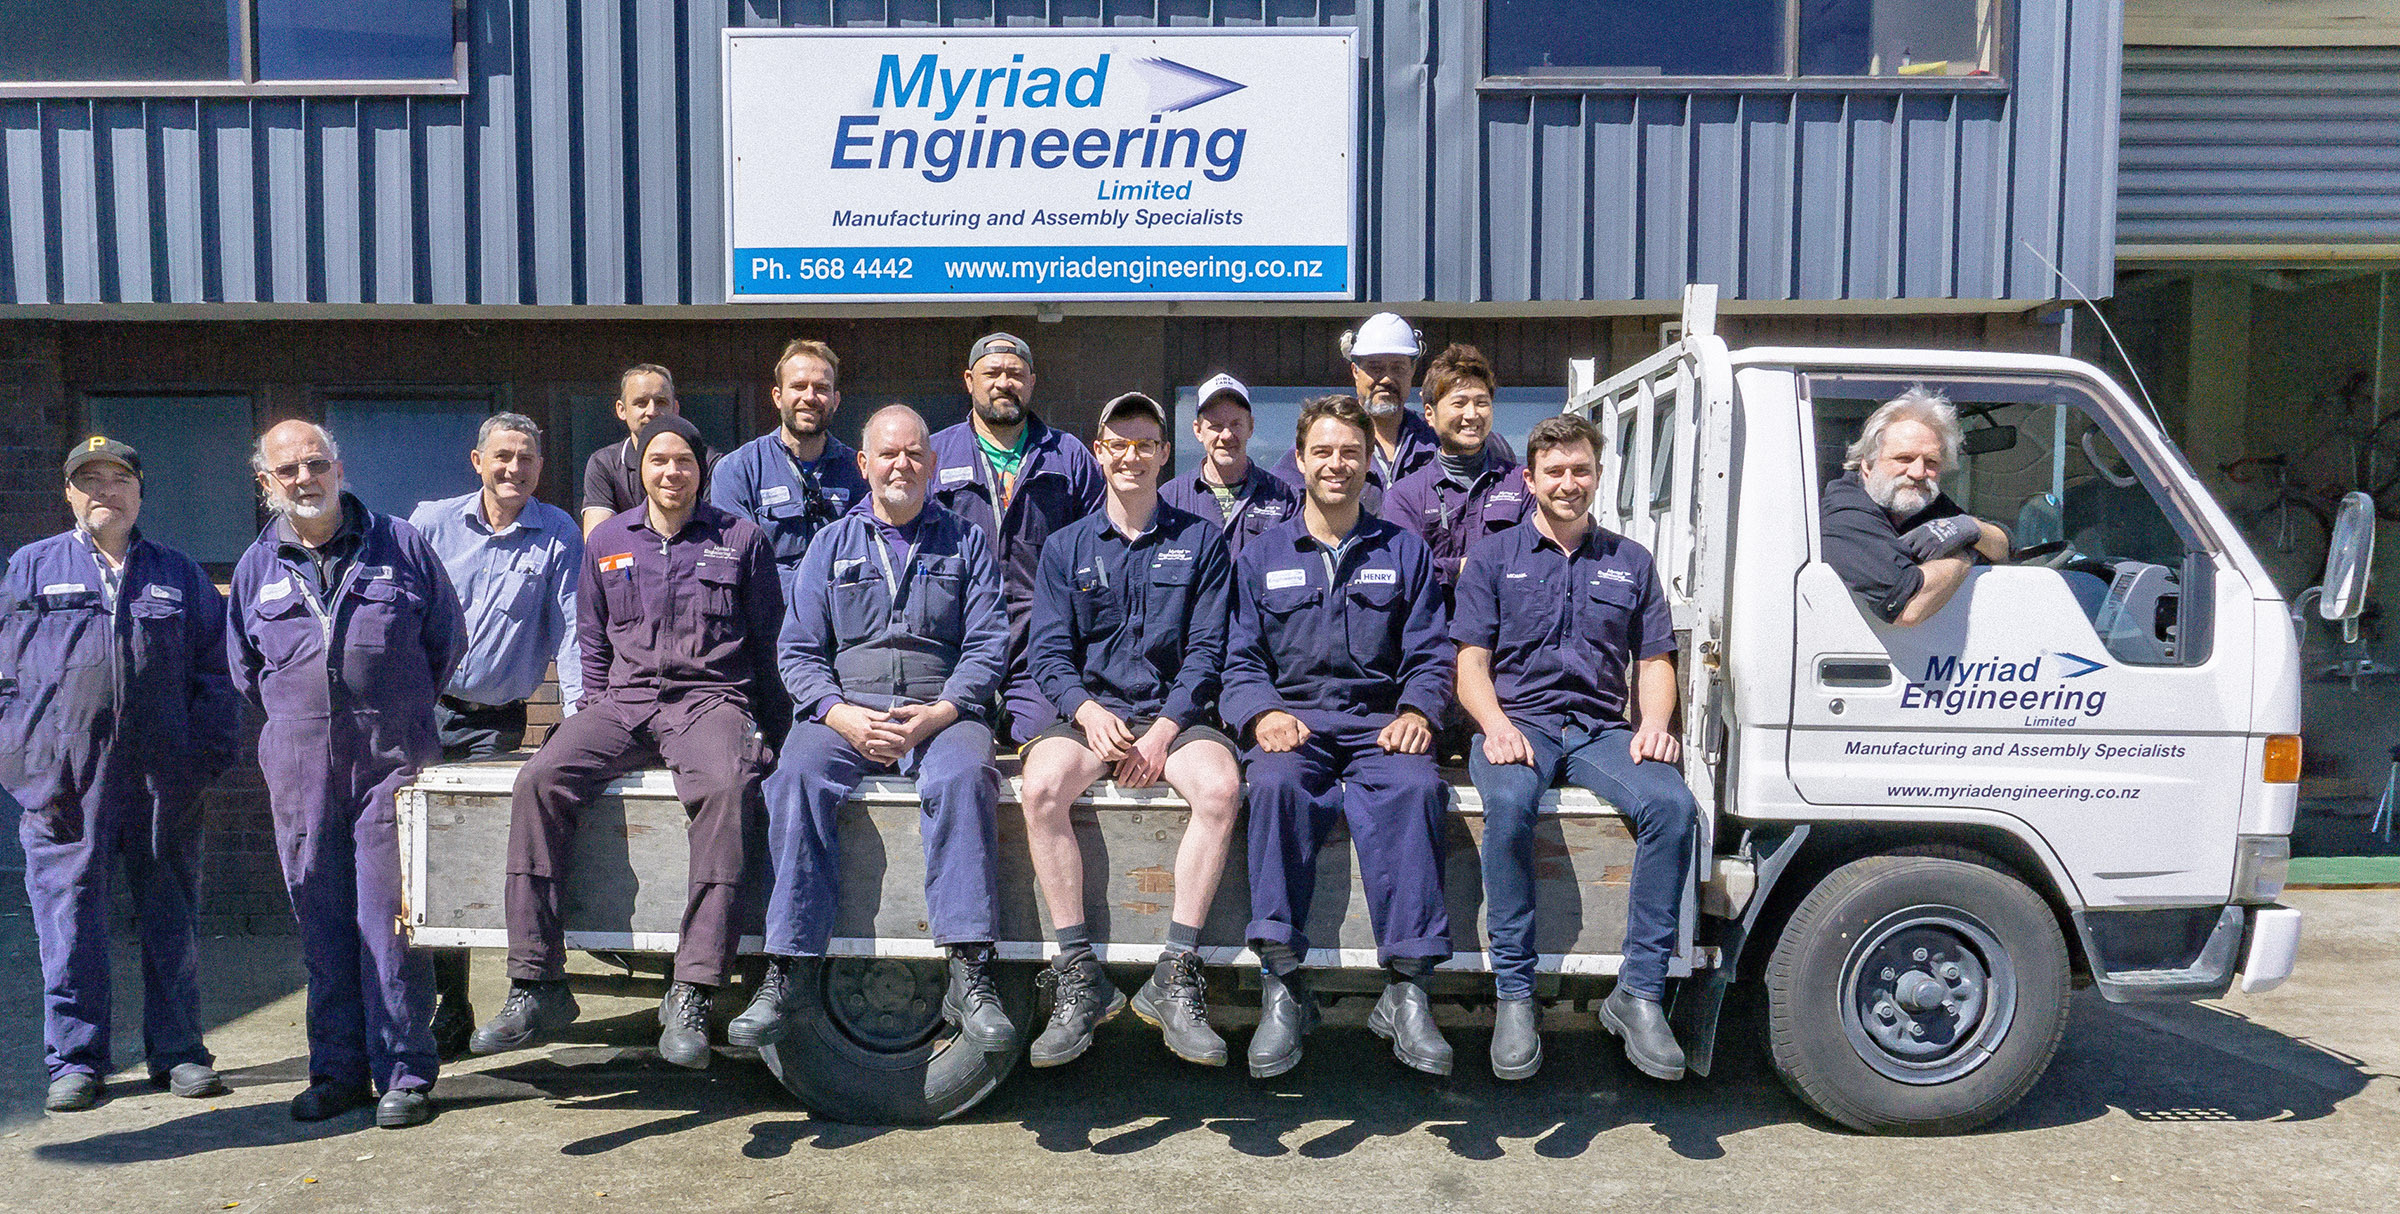 The Myriad Engineering Team